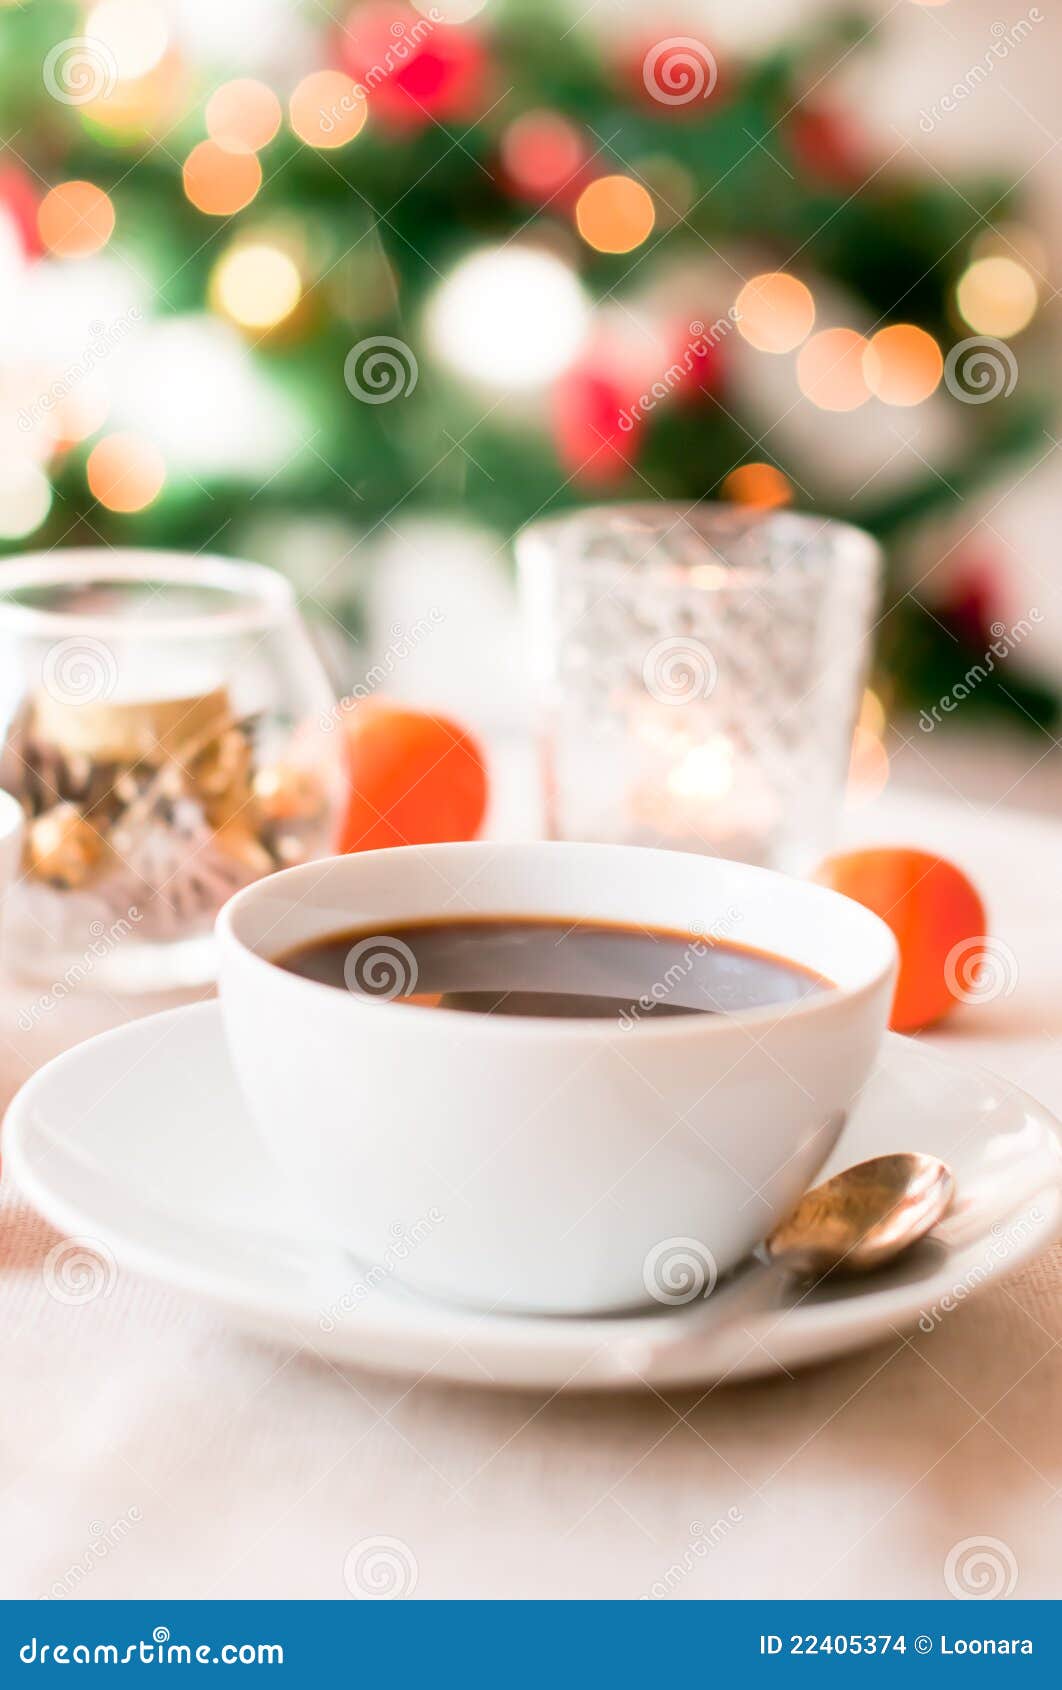 Coffee on Christmas Morning Stock Photo - Image of morning, illuminated ...